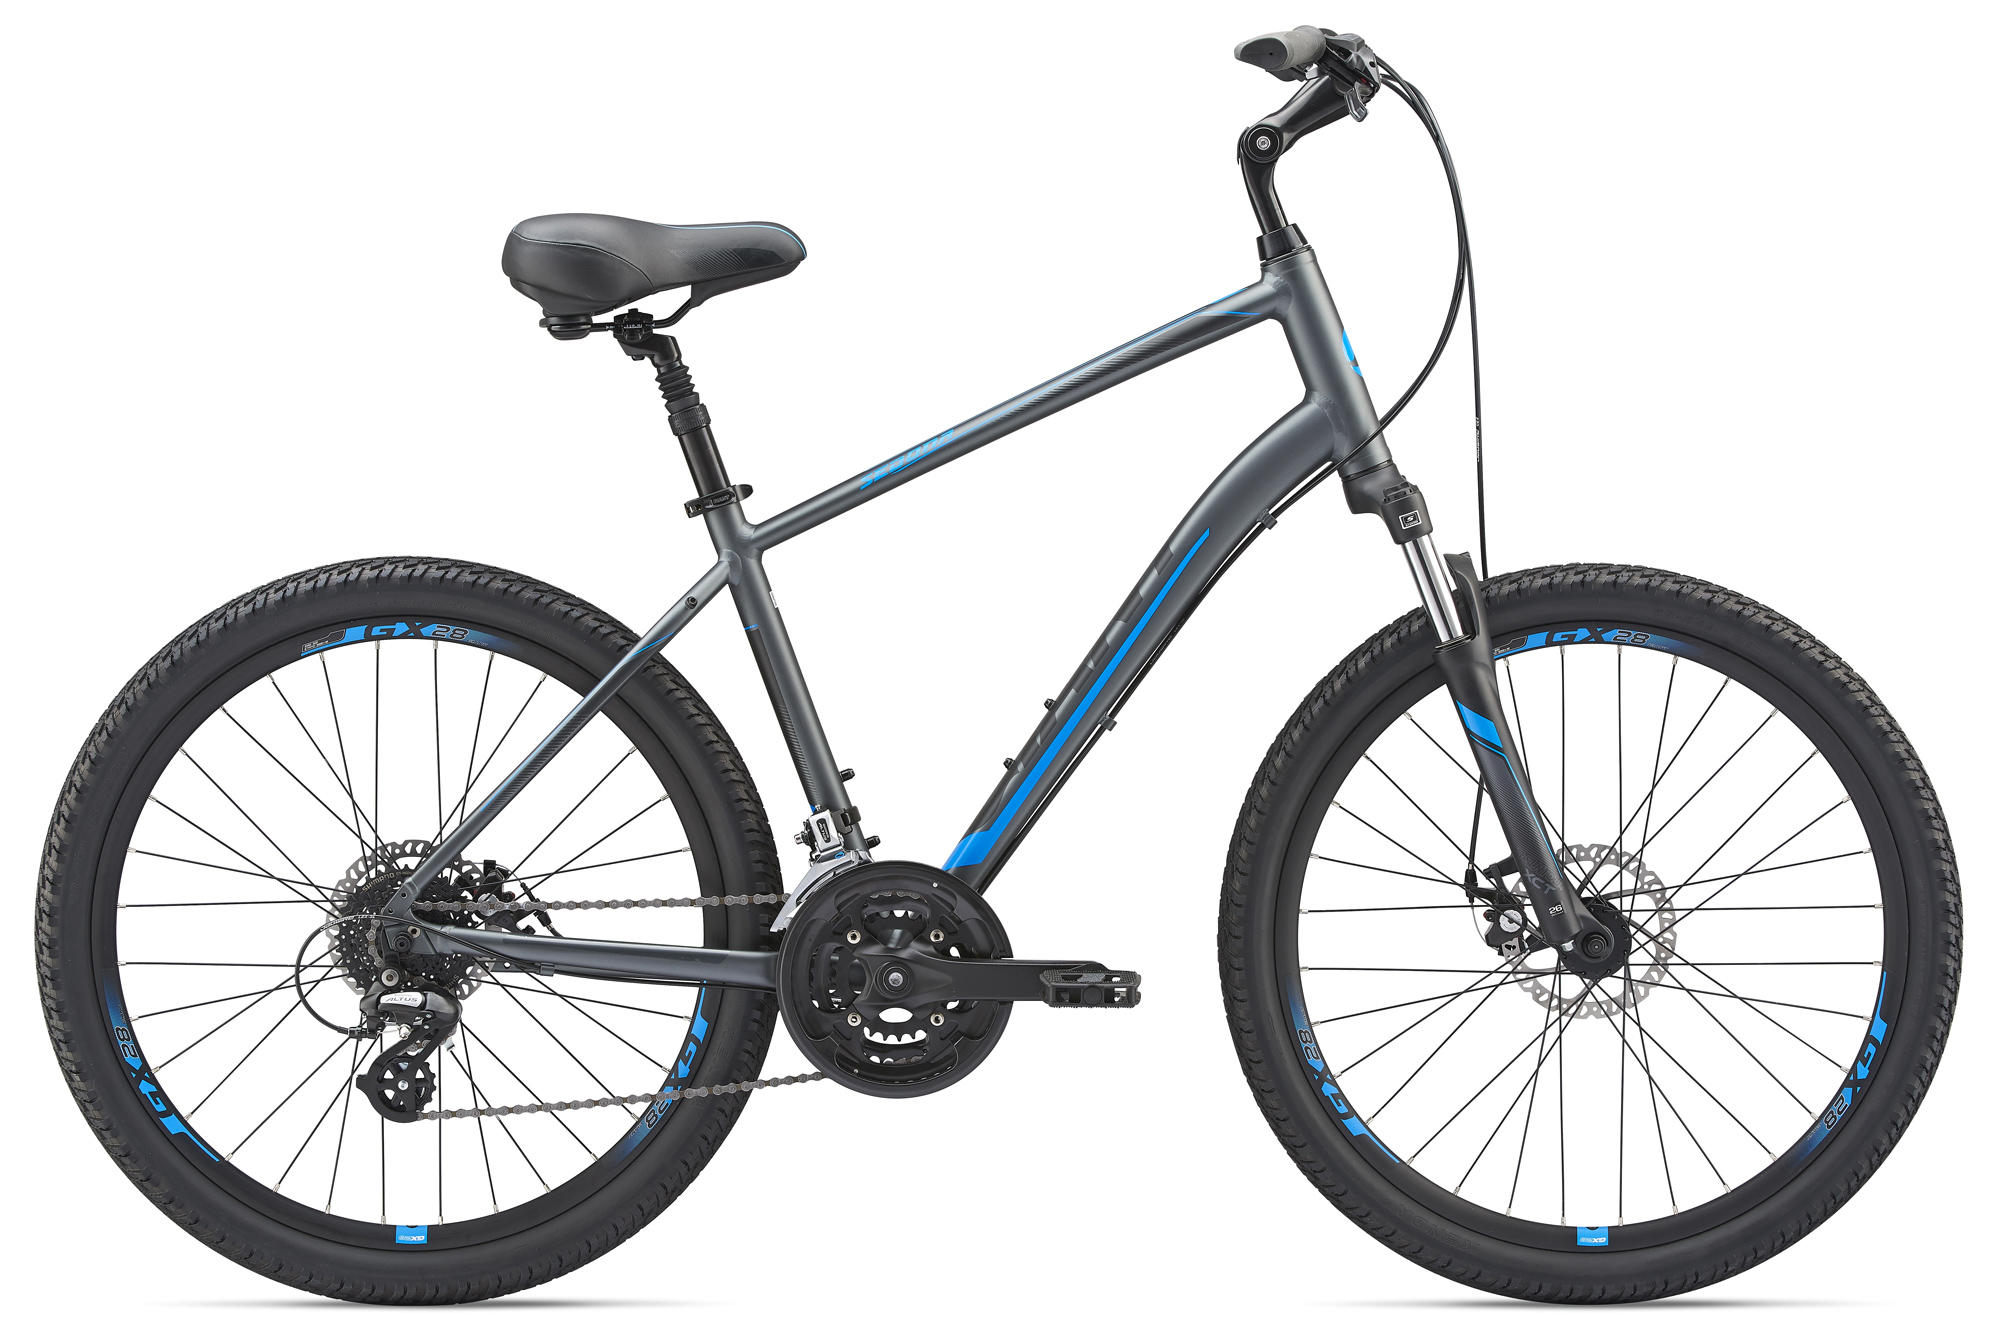  Отзывы о Городском велосипеде Giant Sedona DX 2019